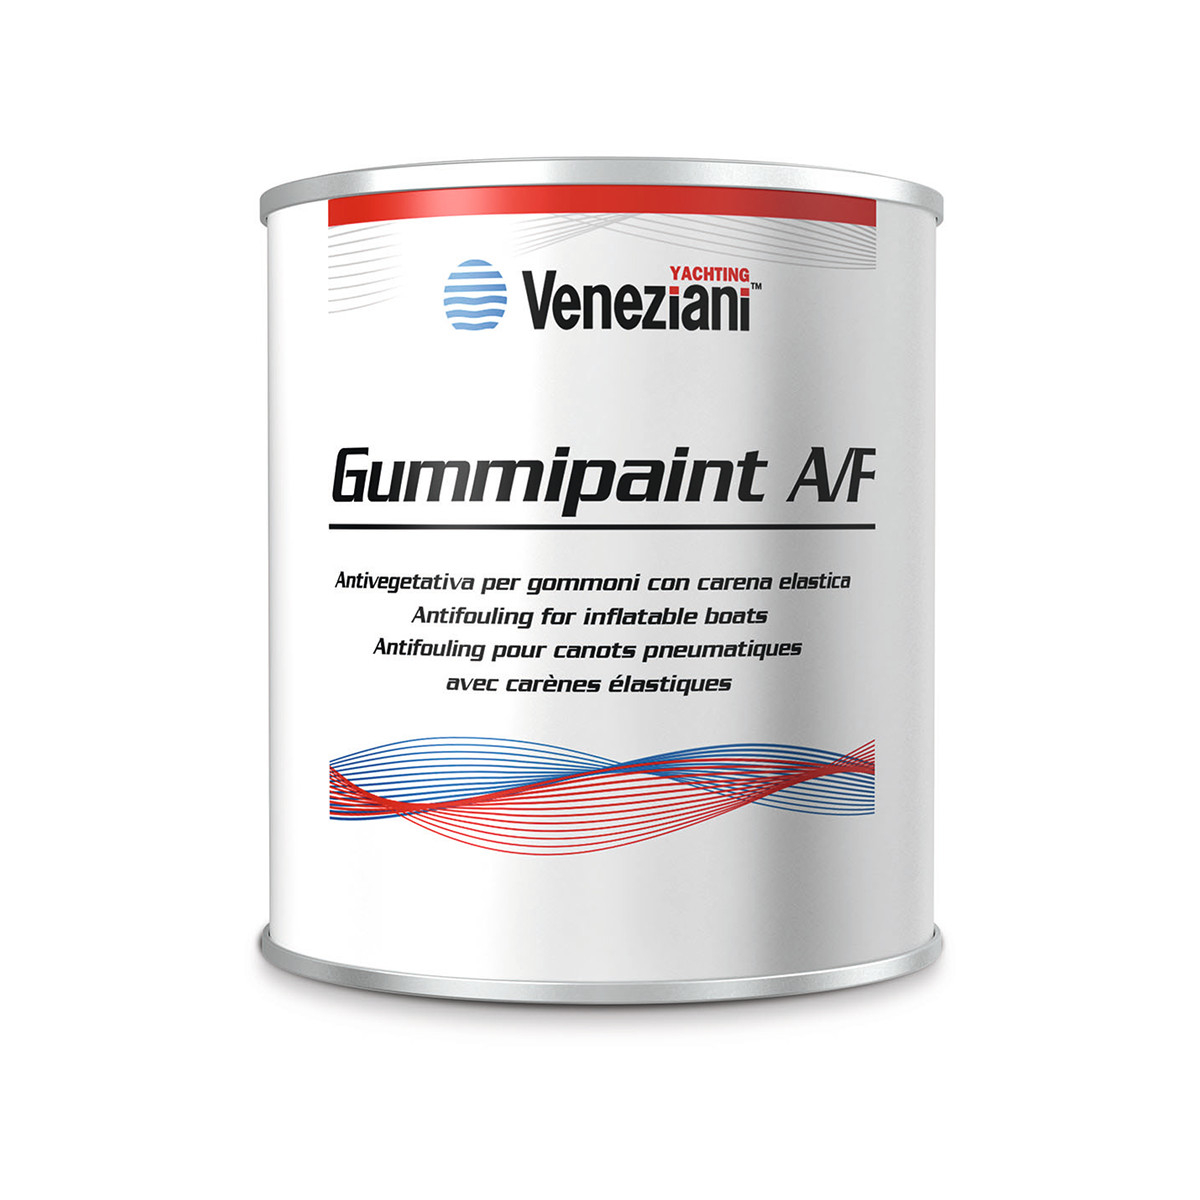 Veneziani Gummipaint antivegetativa per gommoni - nero, 500ml